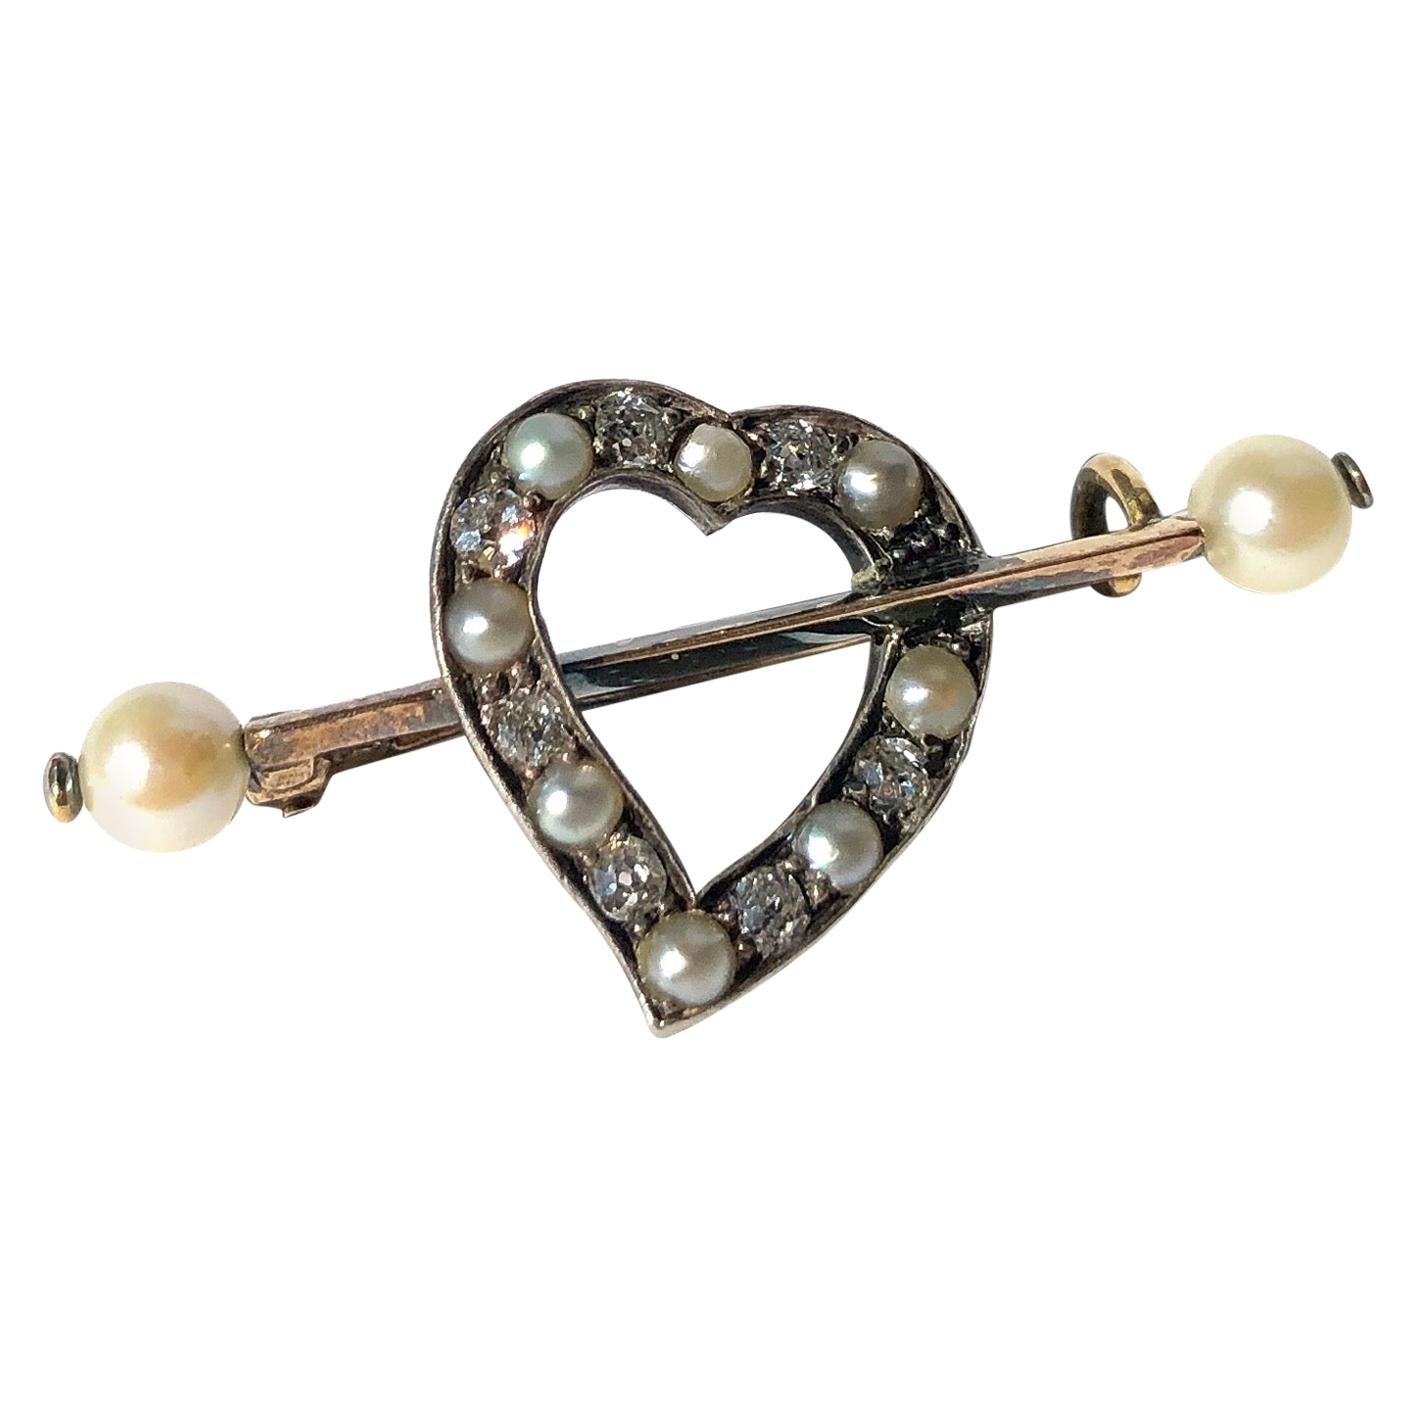 Broche édouardienne en forme de cœur avec breloques en diamants et perles